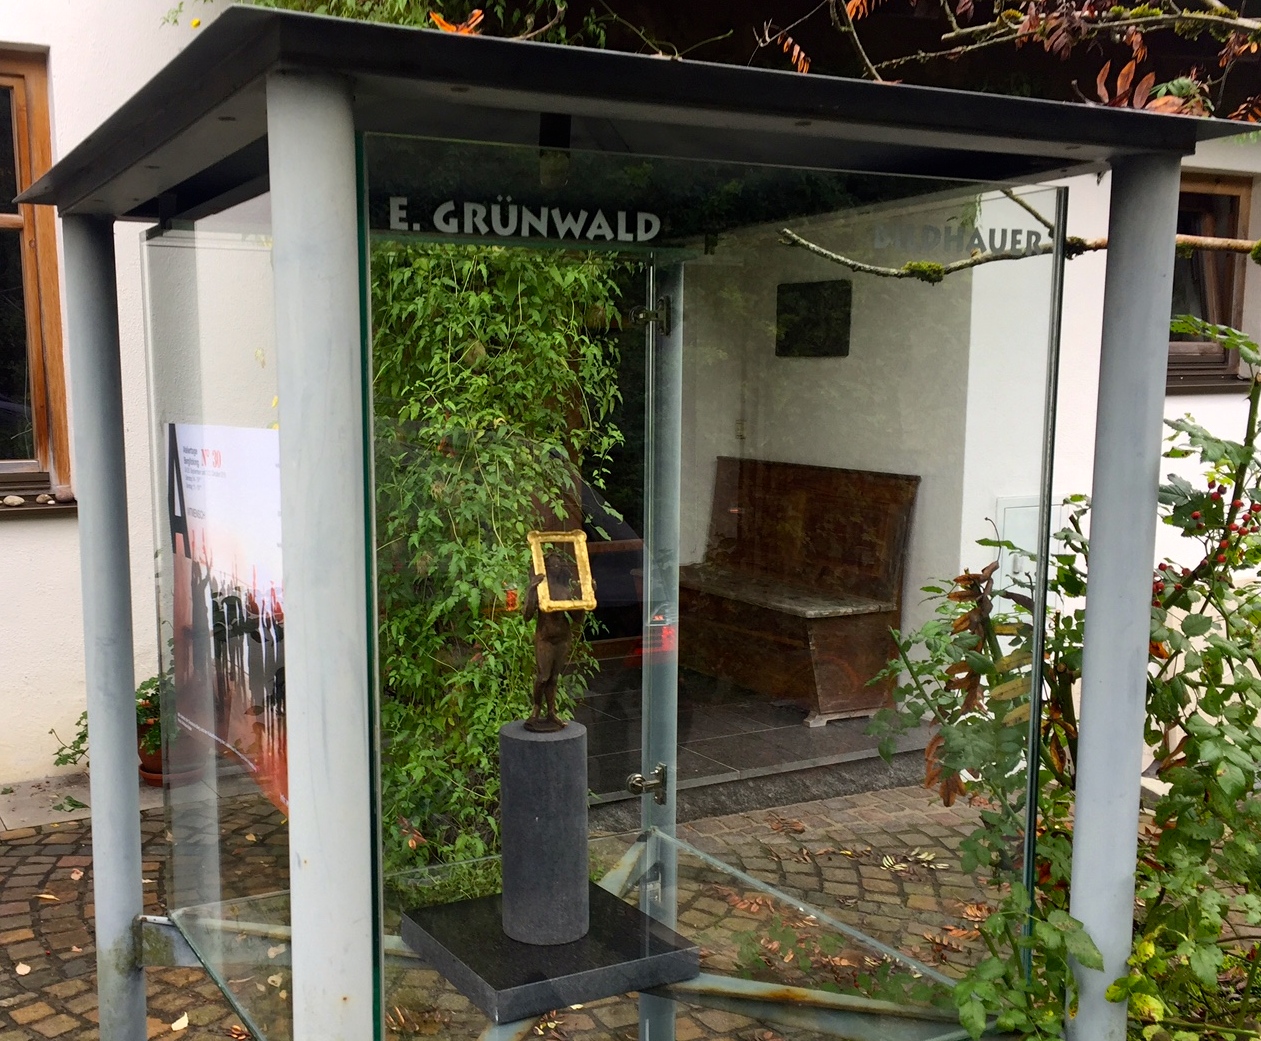 Ateliertage Grünwald